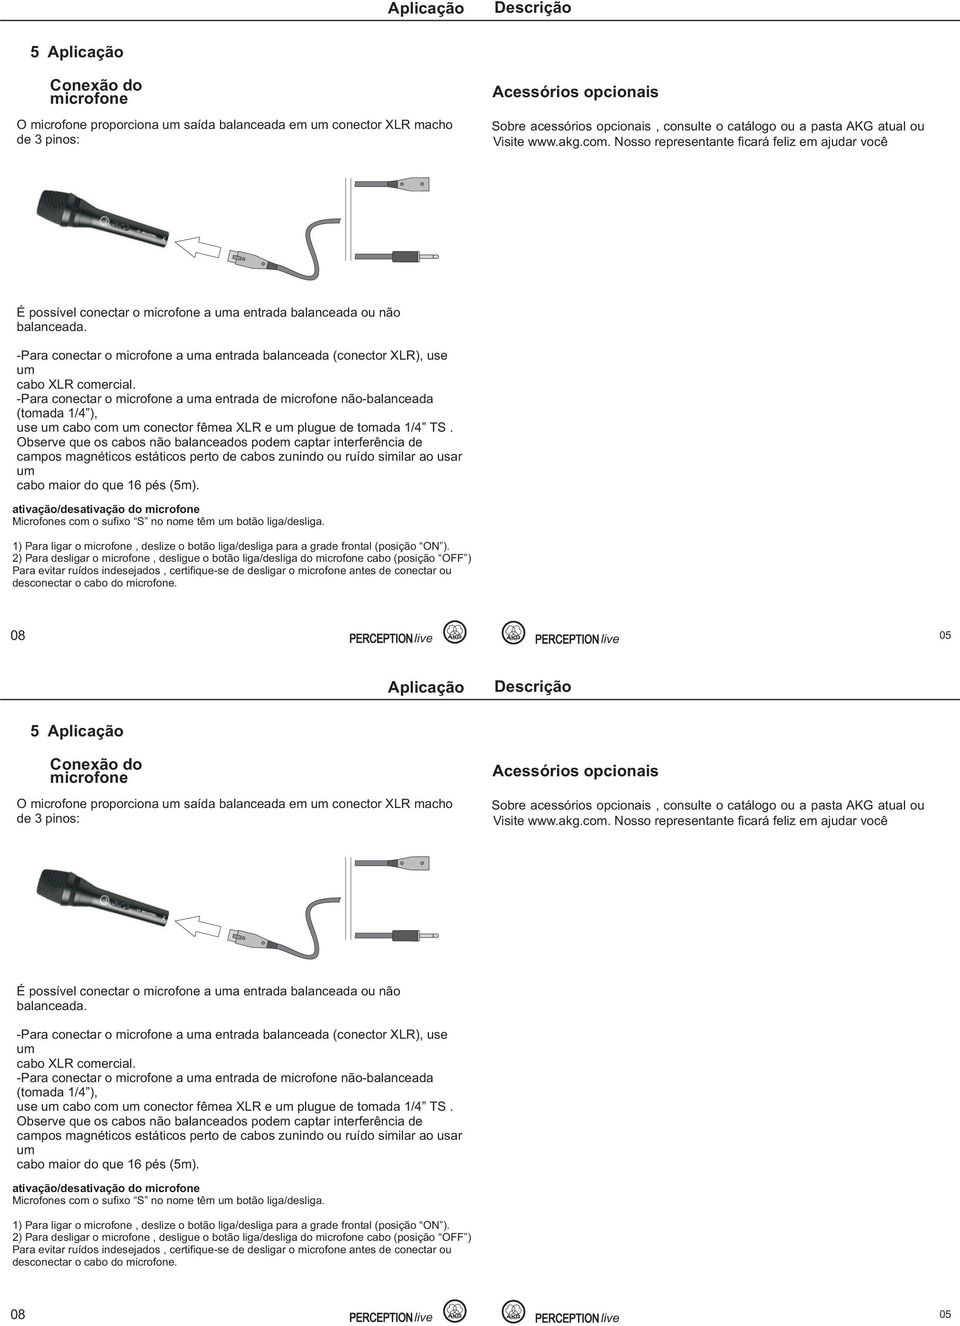 -Para conectar o microfone a a entrada balanceada (conector XLR), use cabo XLR comercial.